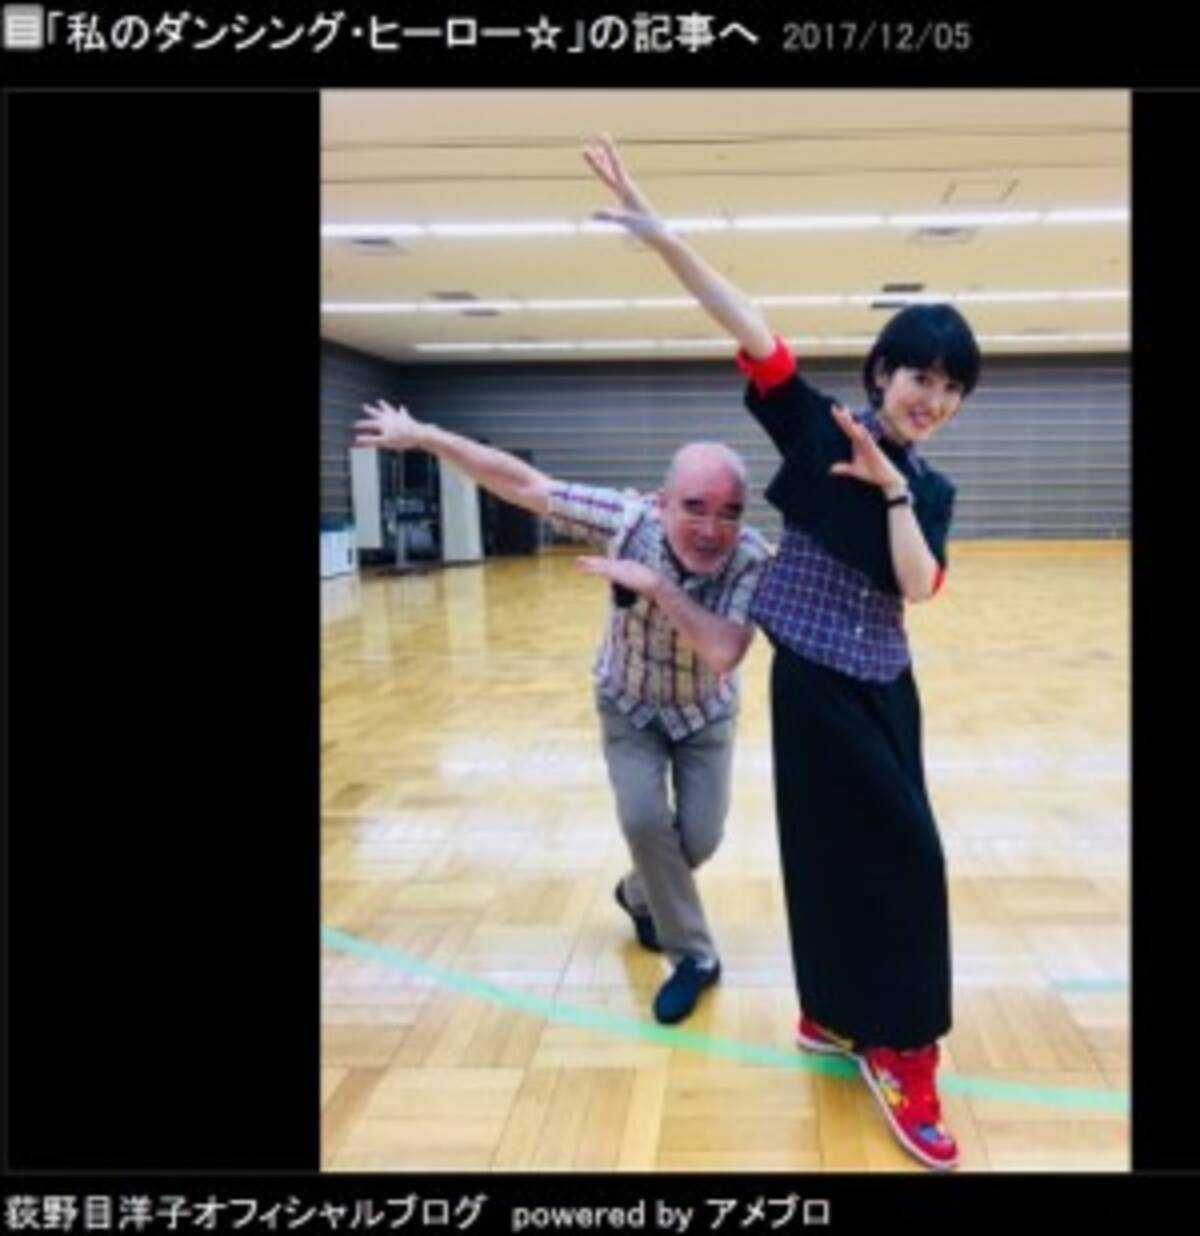 荻野目洋子 私のダンシング ヒーロー 振付師 三浦亨さんとポーズ 17年12月6日 エキサイトニュース